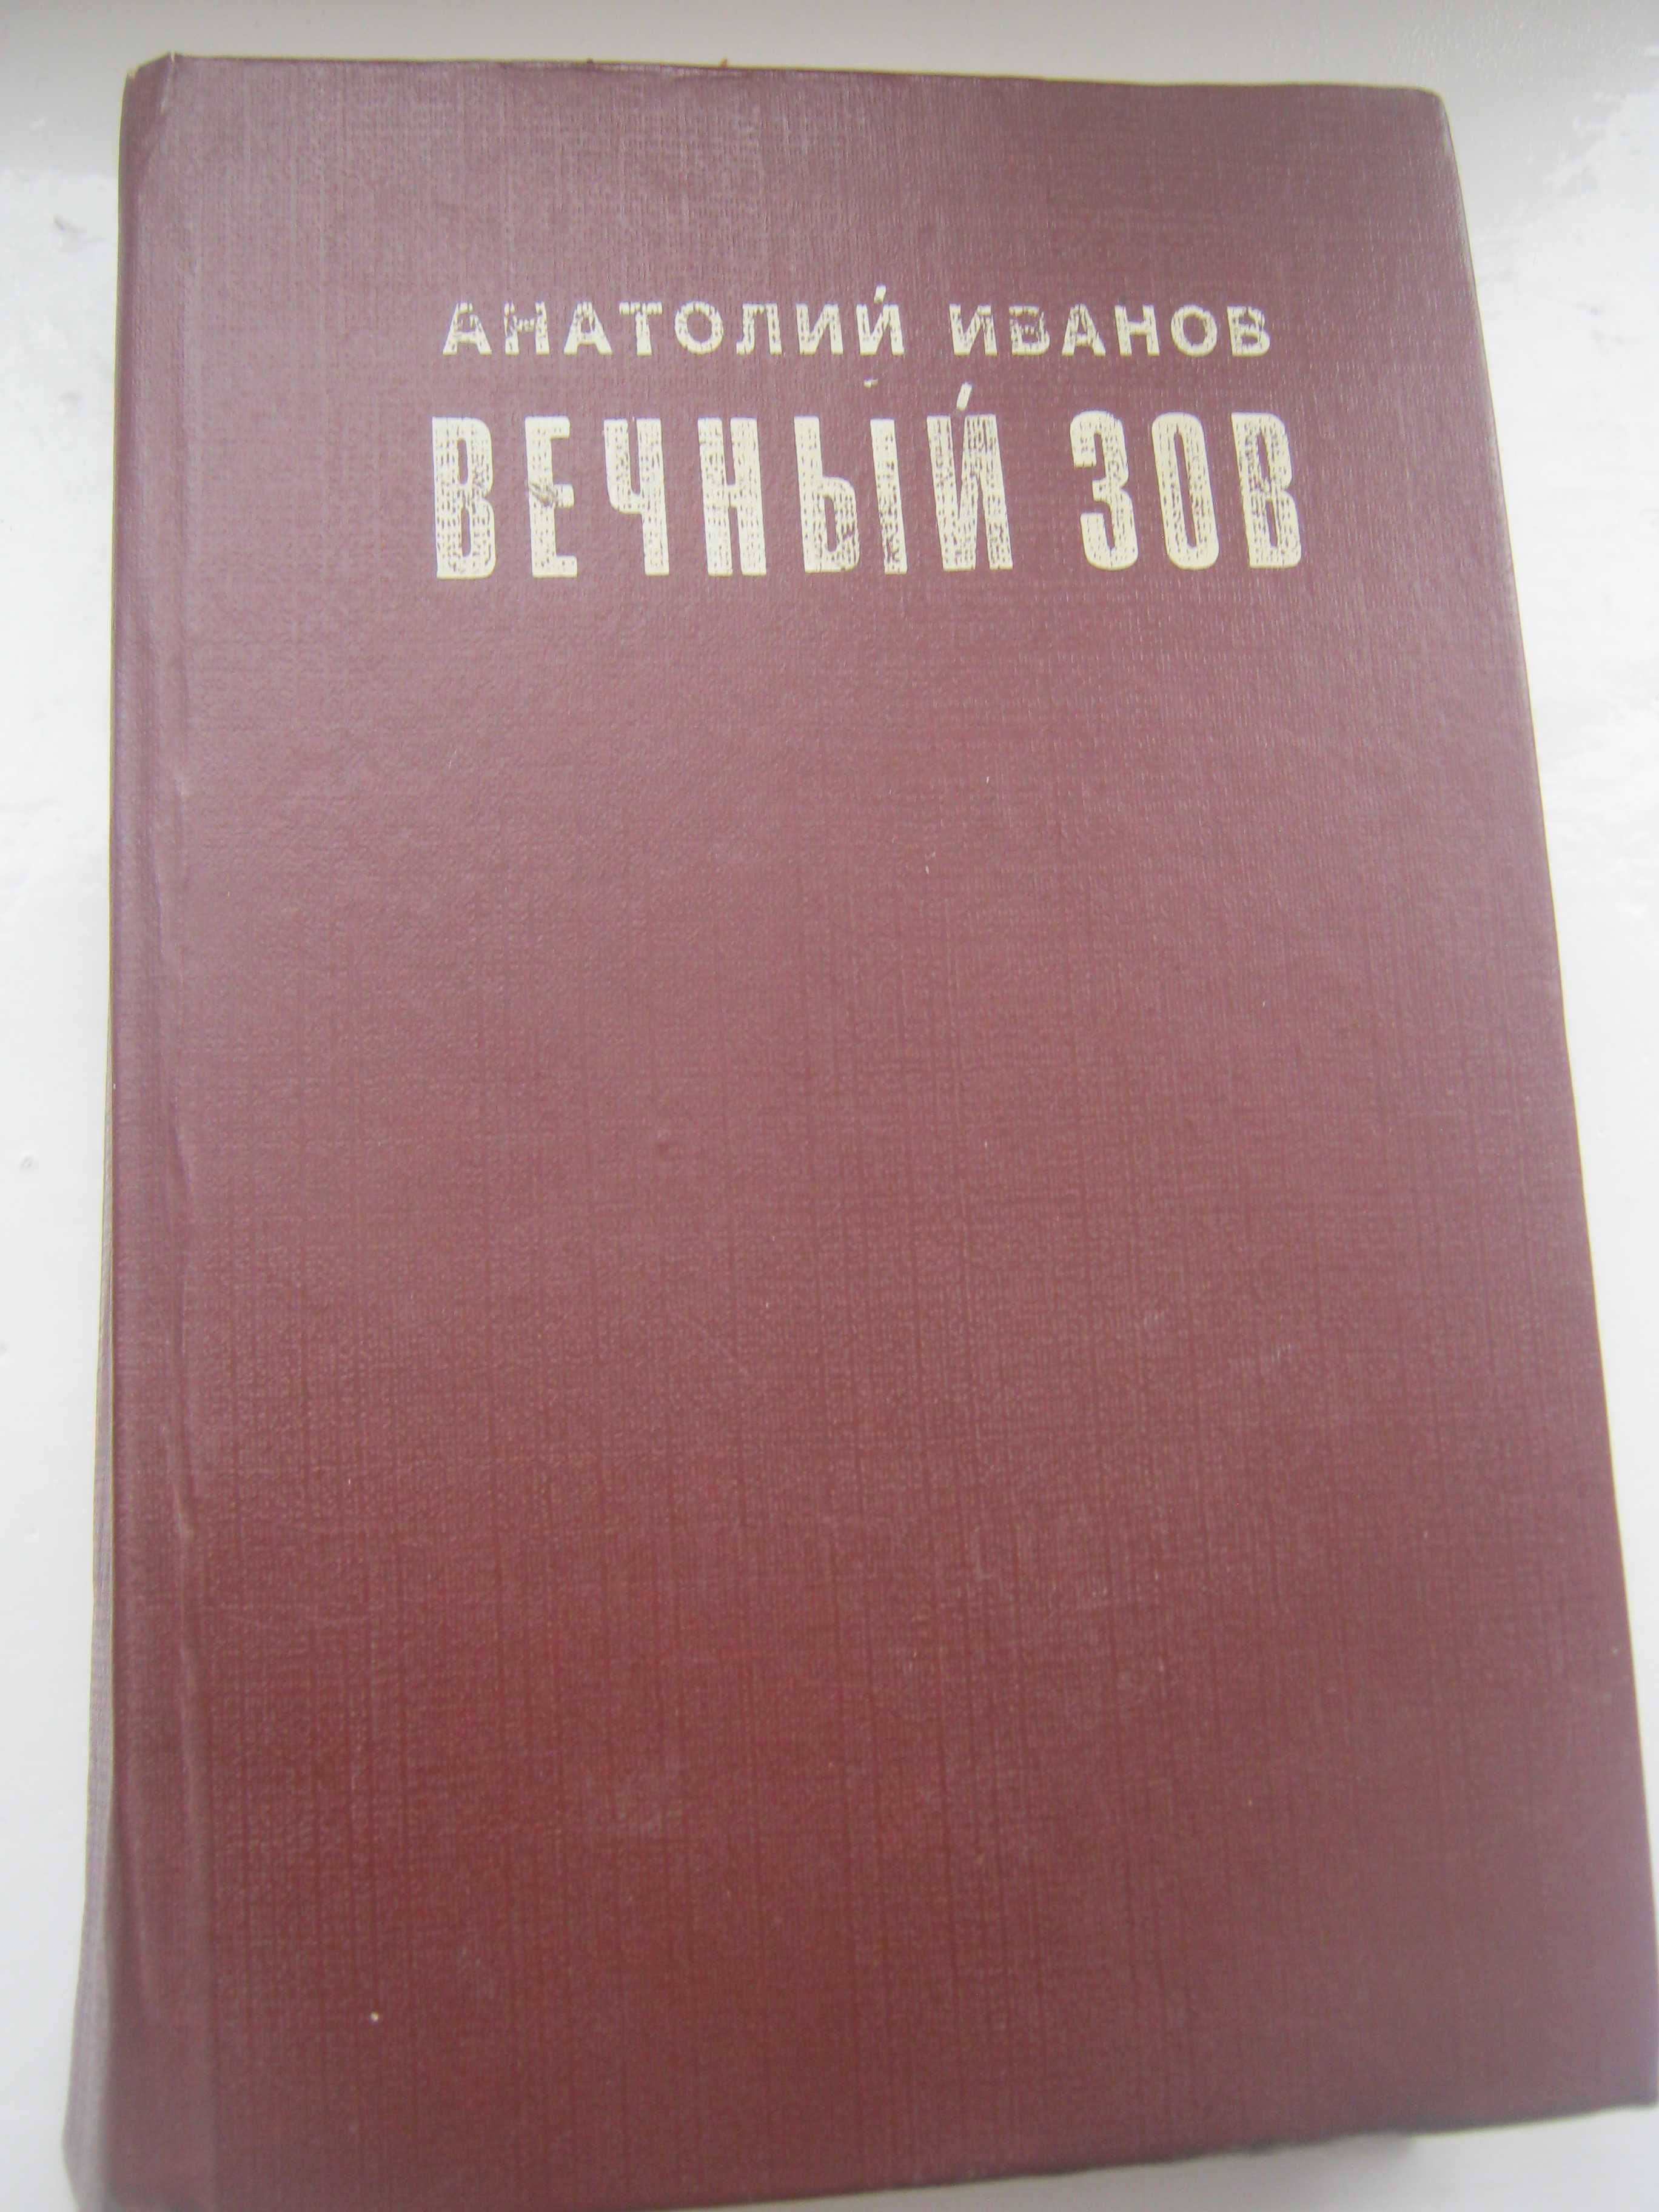 книги  Иванов  Вечный зов